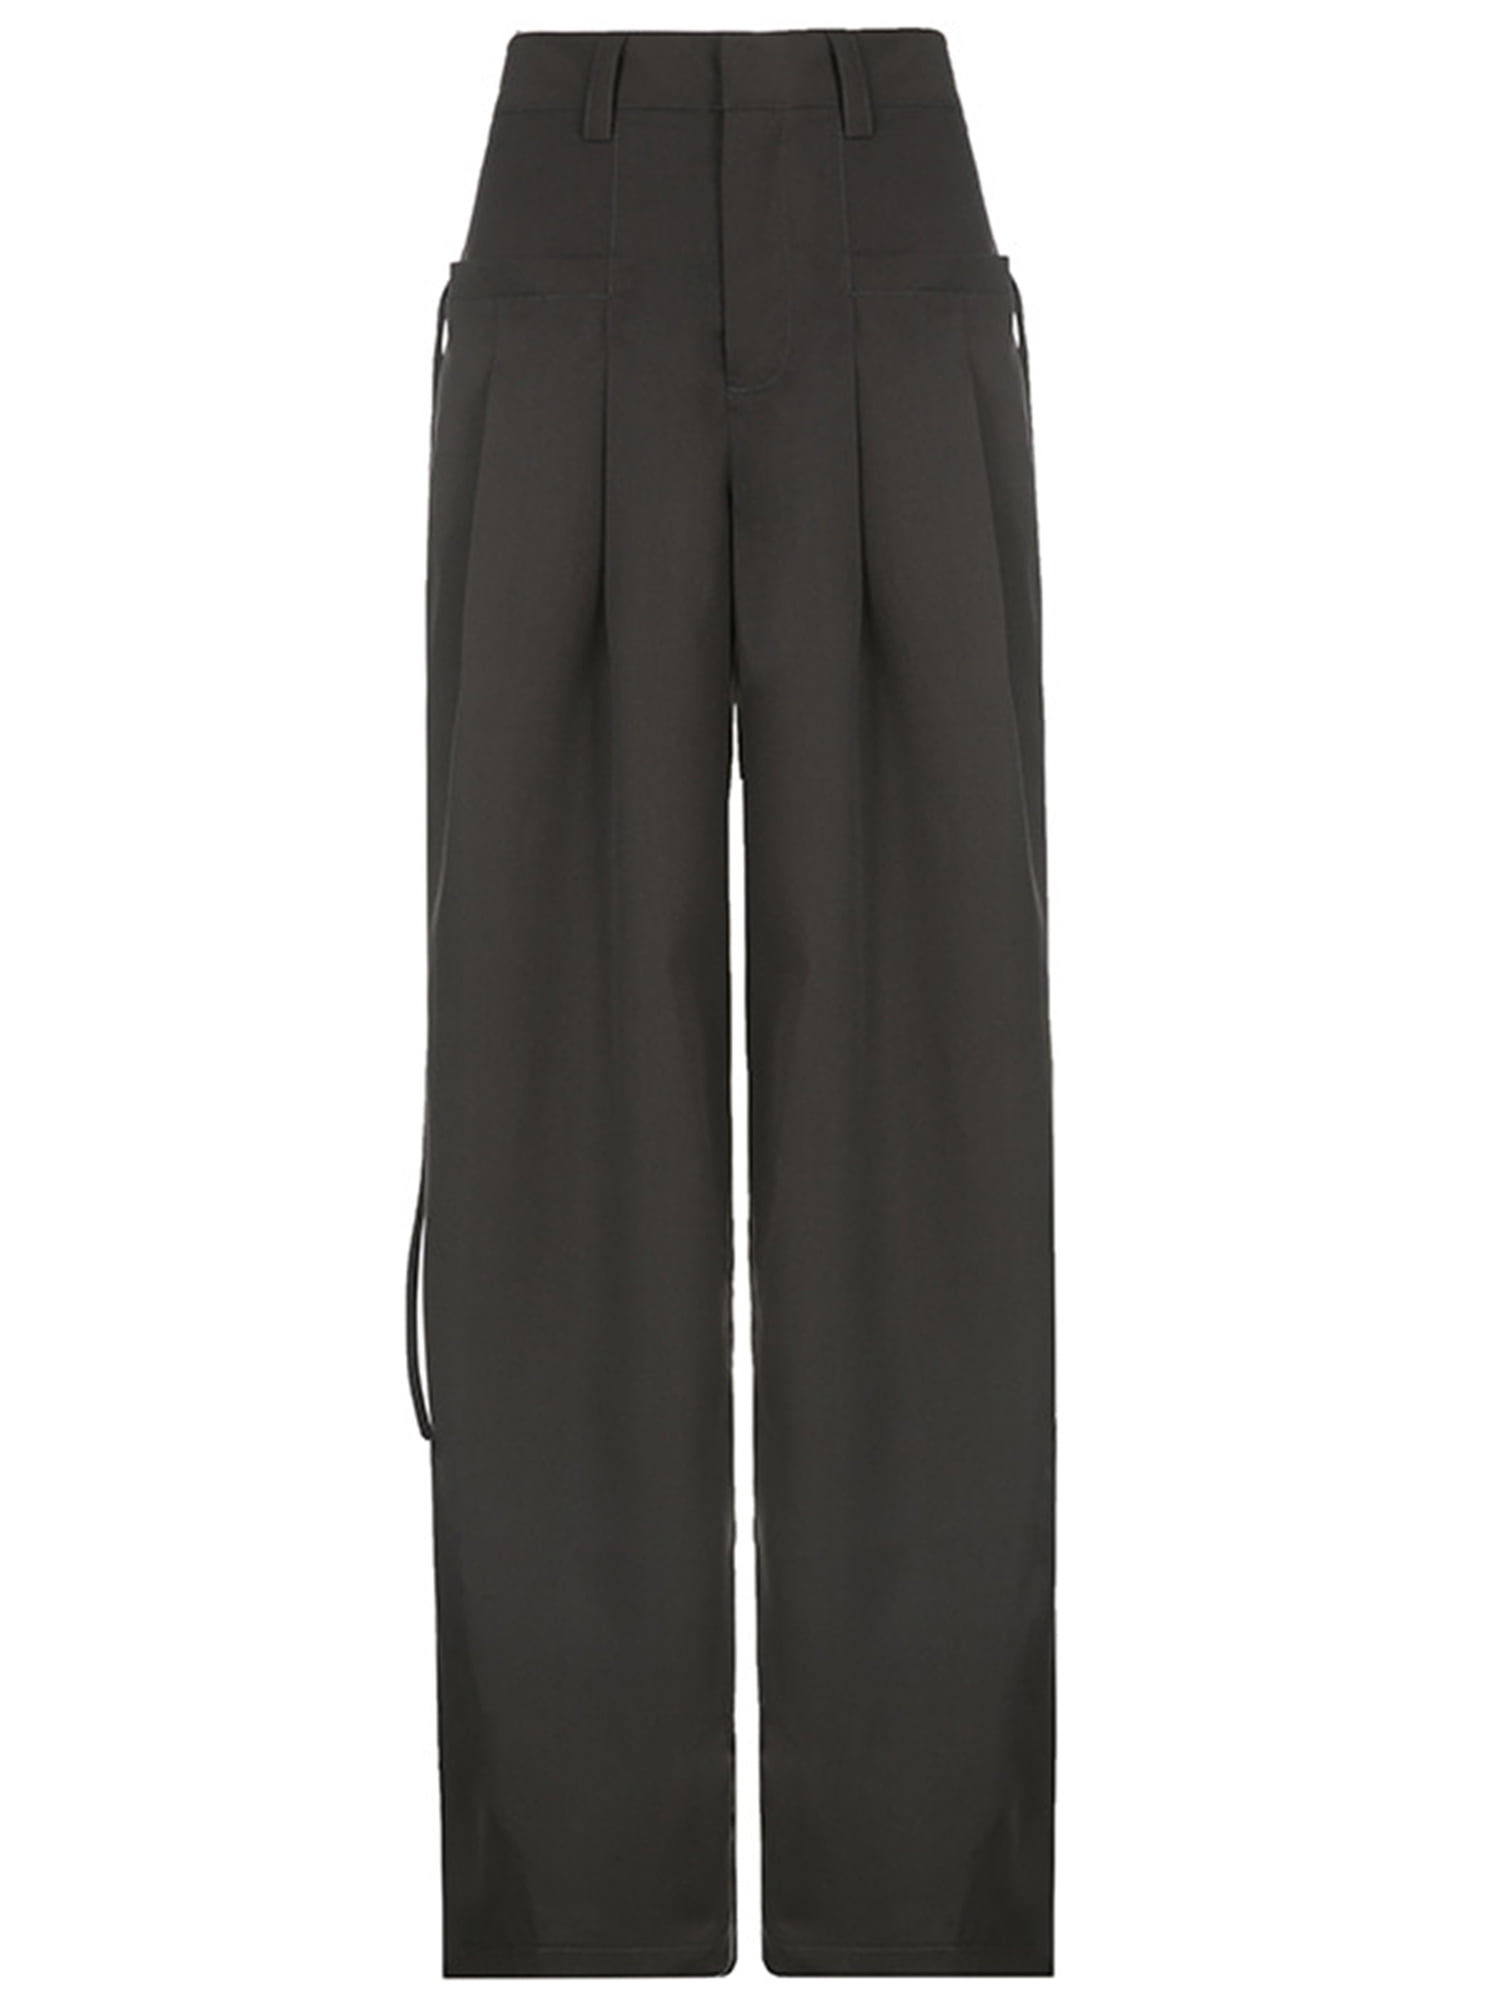 Sunisery Y2k Baggy Jeans for Women Low Waist Wide Leg Denim Jeans Casual  Cargo Pants Harajuku Pockets Trousers Streetwear Black M 